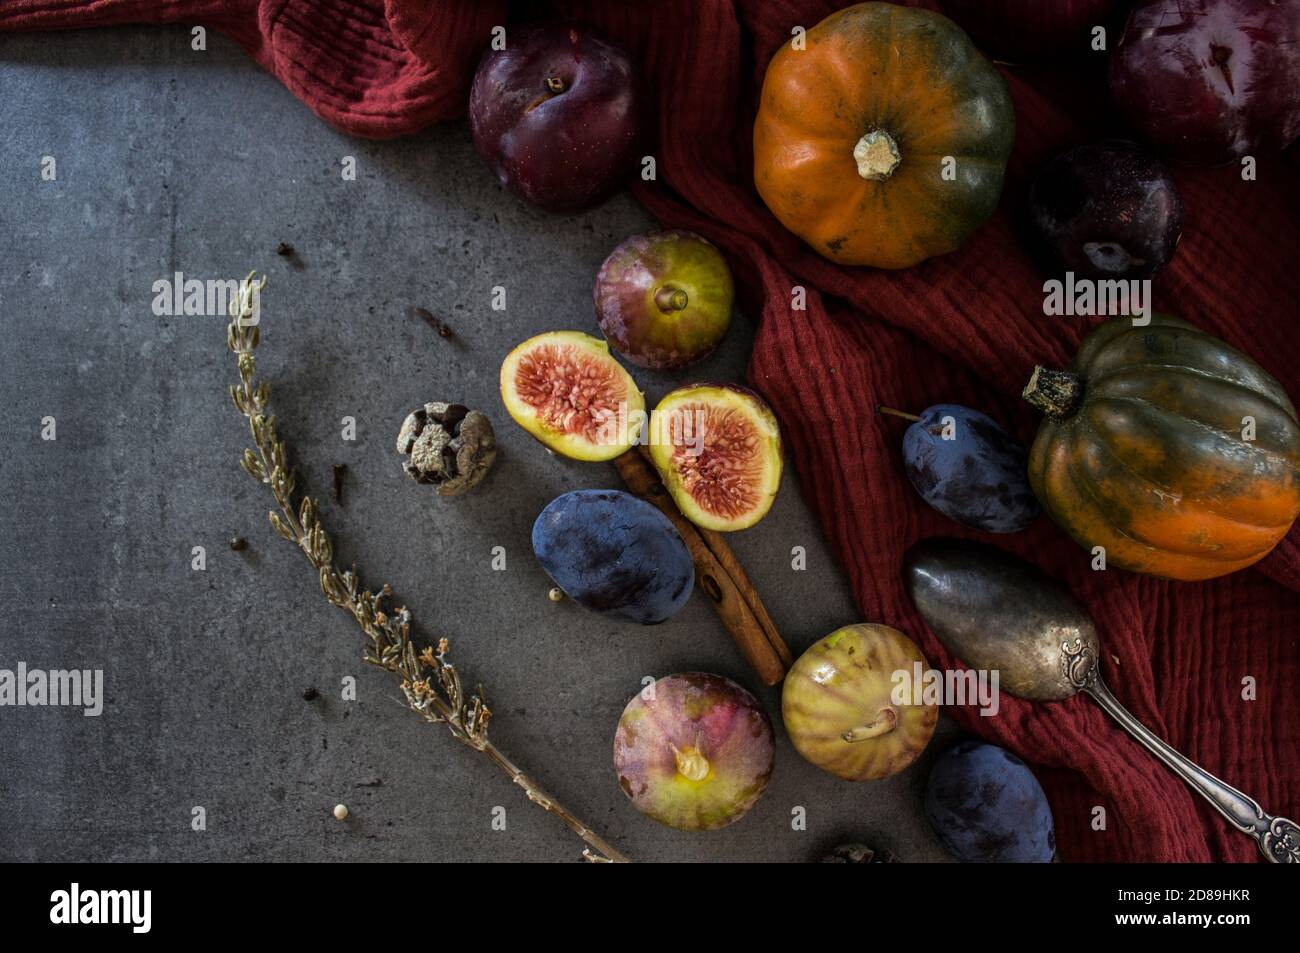 Frisches Obst und Gemüse auf dem Tisch. Edelsteinkürbis, Pflaumen, Feigen und Silberlöffel auf grauem Hintergrund. Draufsicht Foto der Herbsternte. Stockfoto